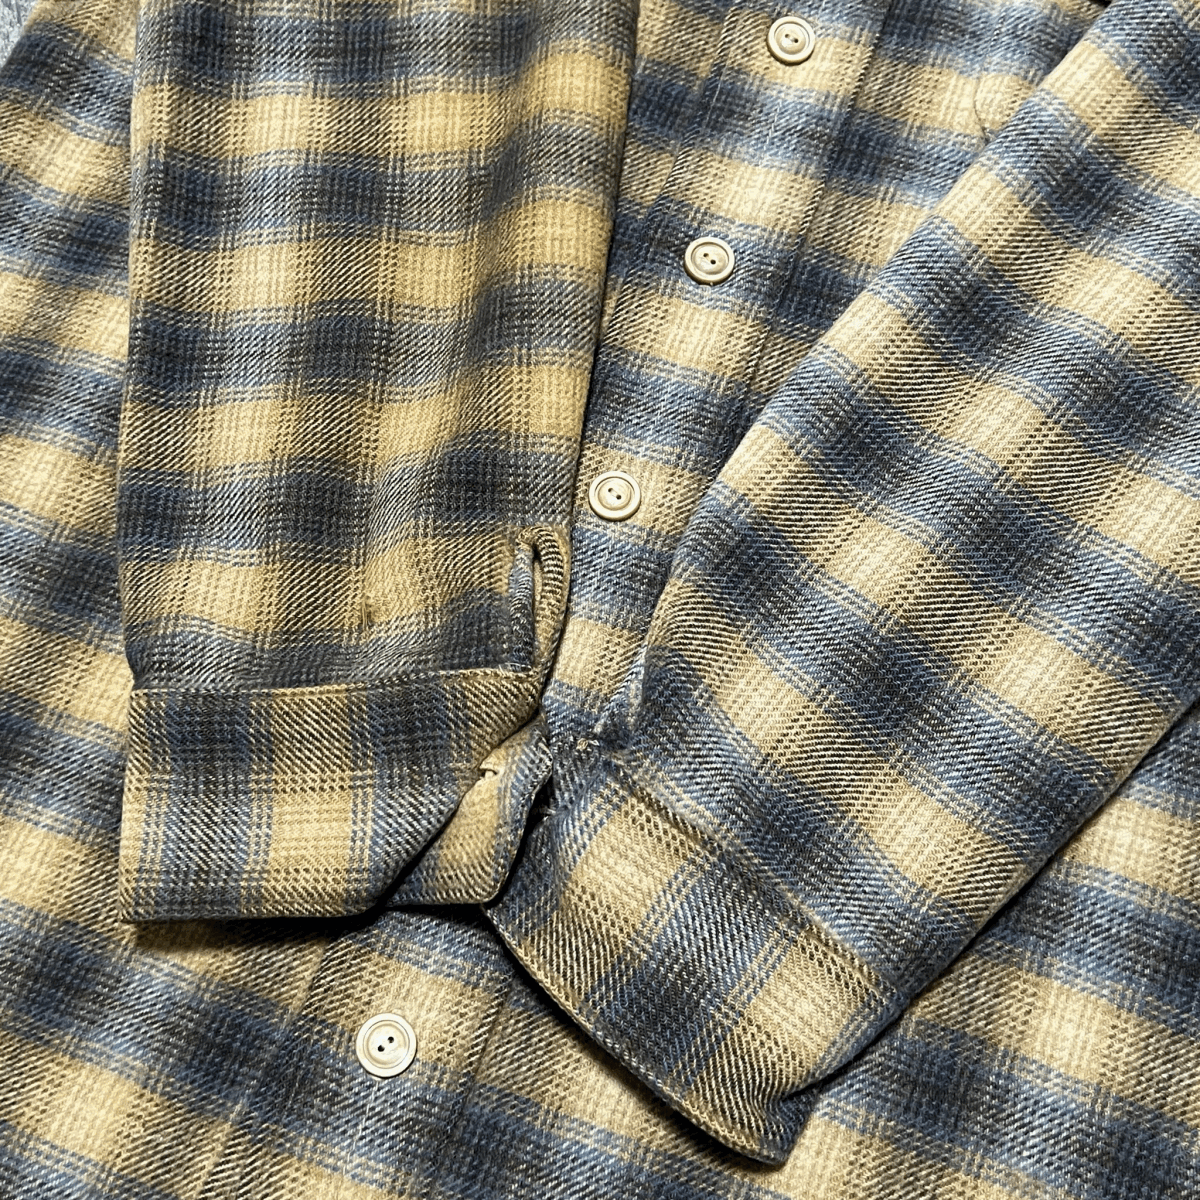 Vintage 70s Ombre Checkerd Wool Shirt オンブレ チェック ウール シャツ ベージュ ブルー 70年代 ヴィンテージ ビンテージ_画像5